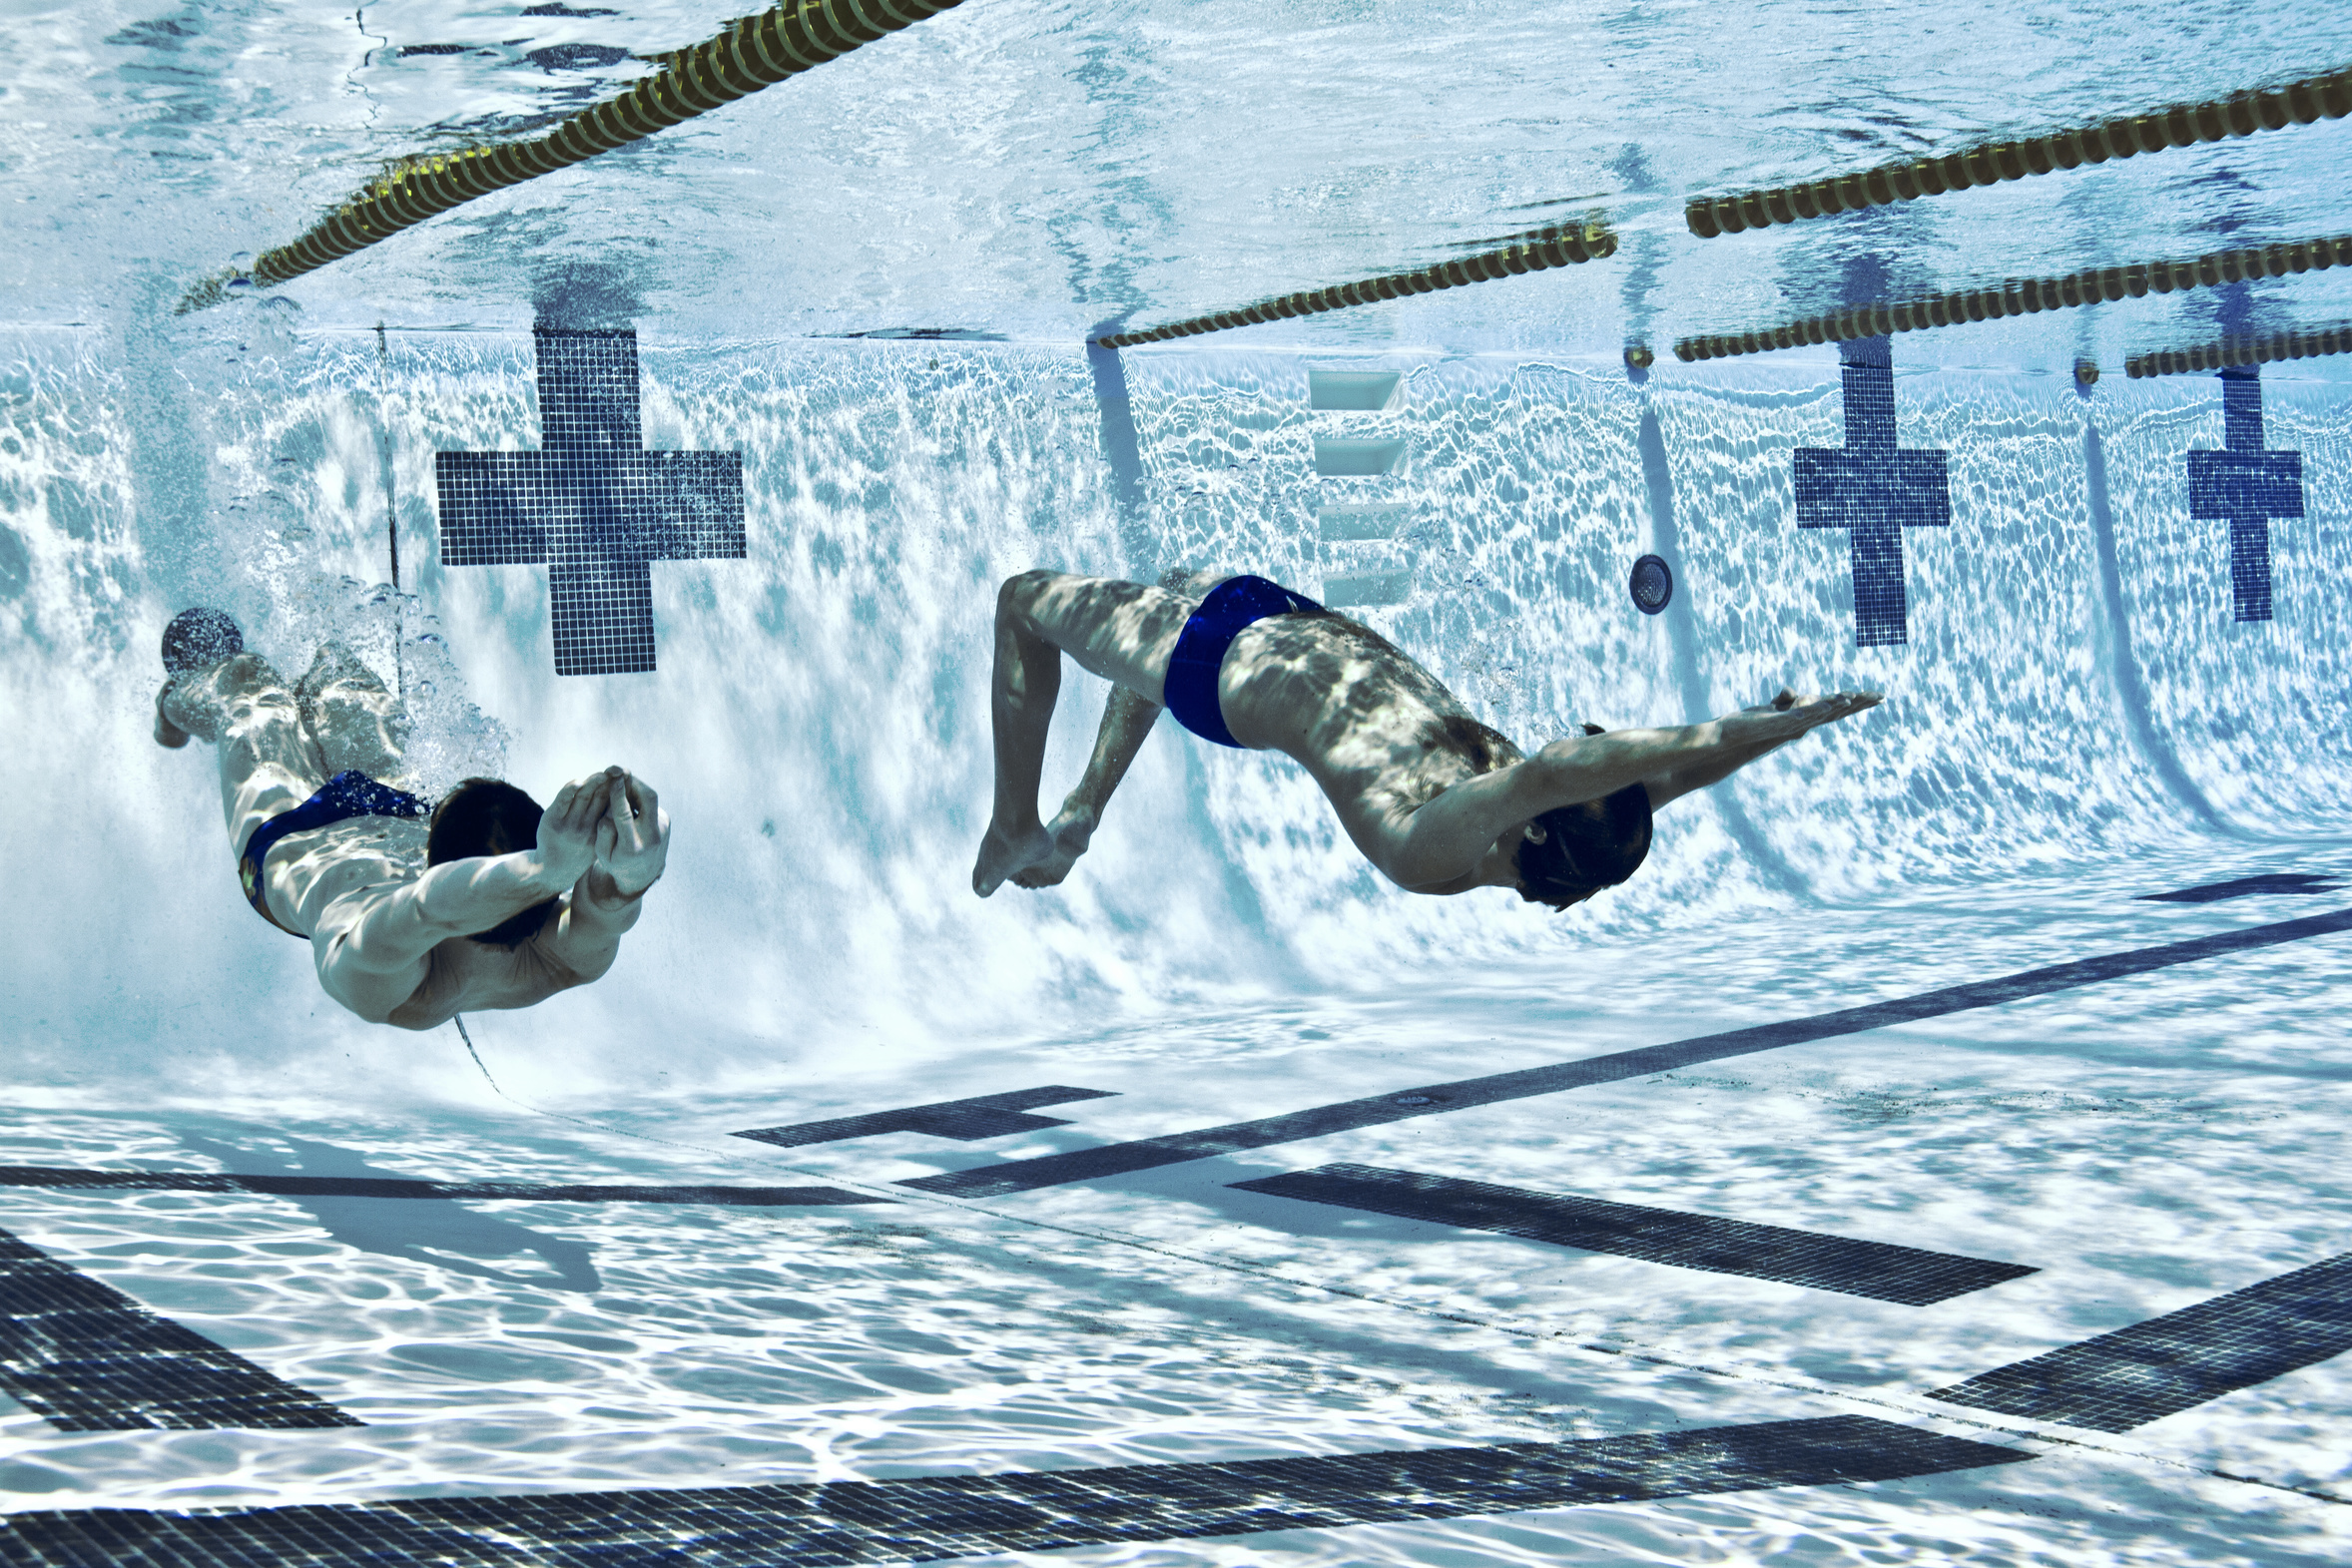 Two men racing underwater